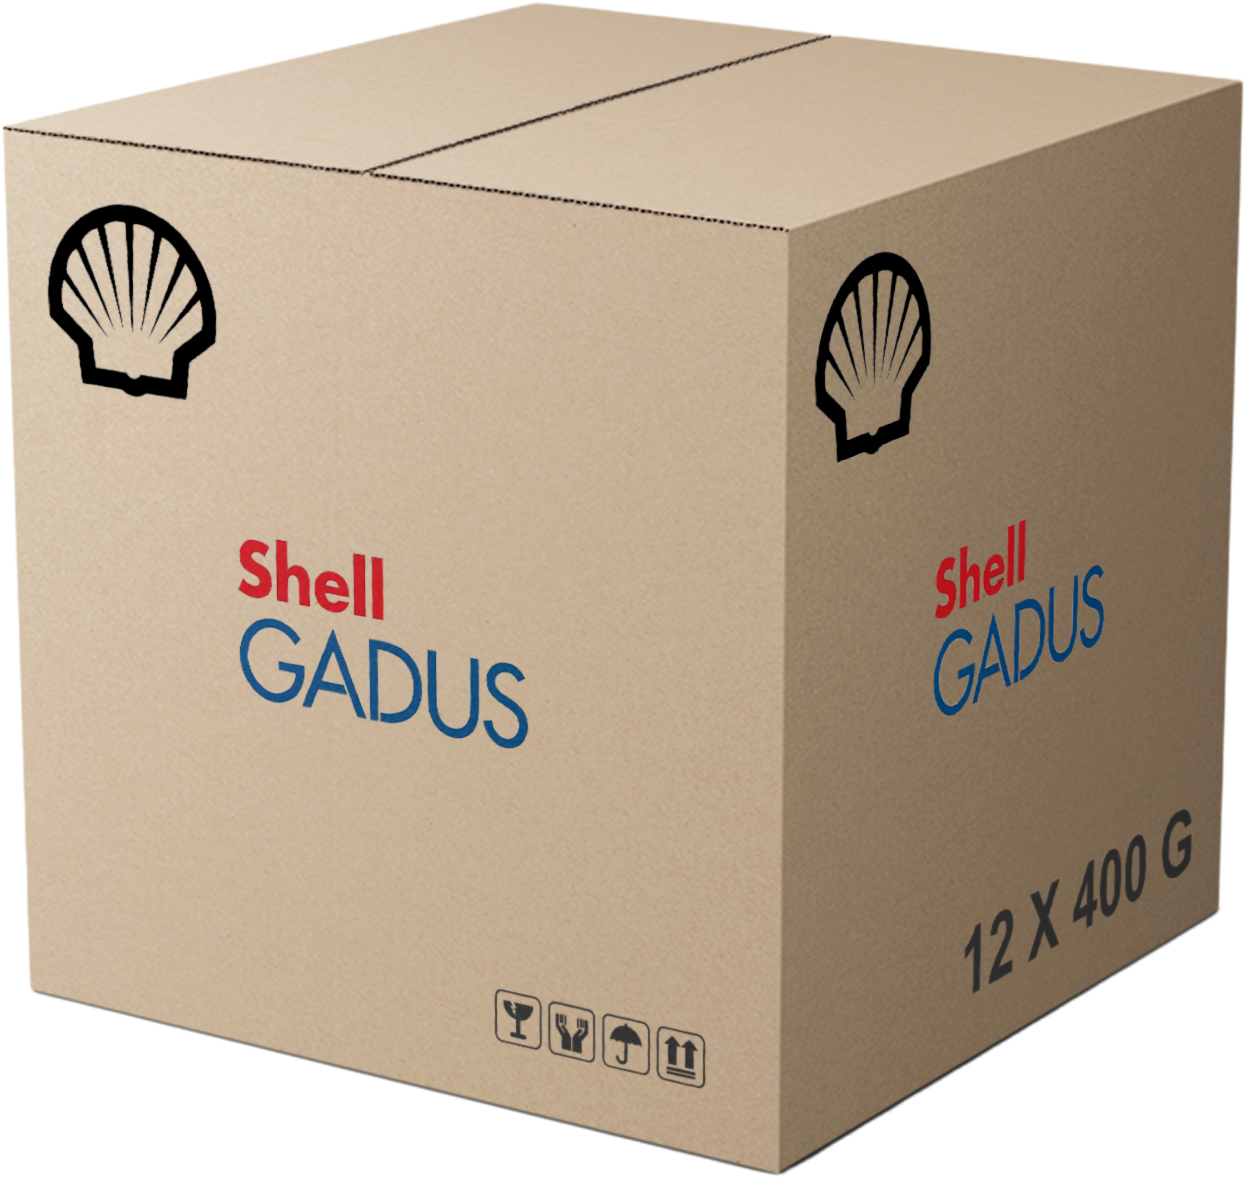 Shell Gadus S2 U460L 2, 12 x 400 gr